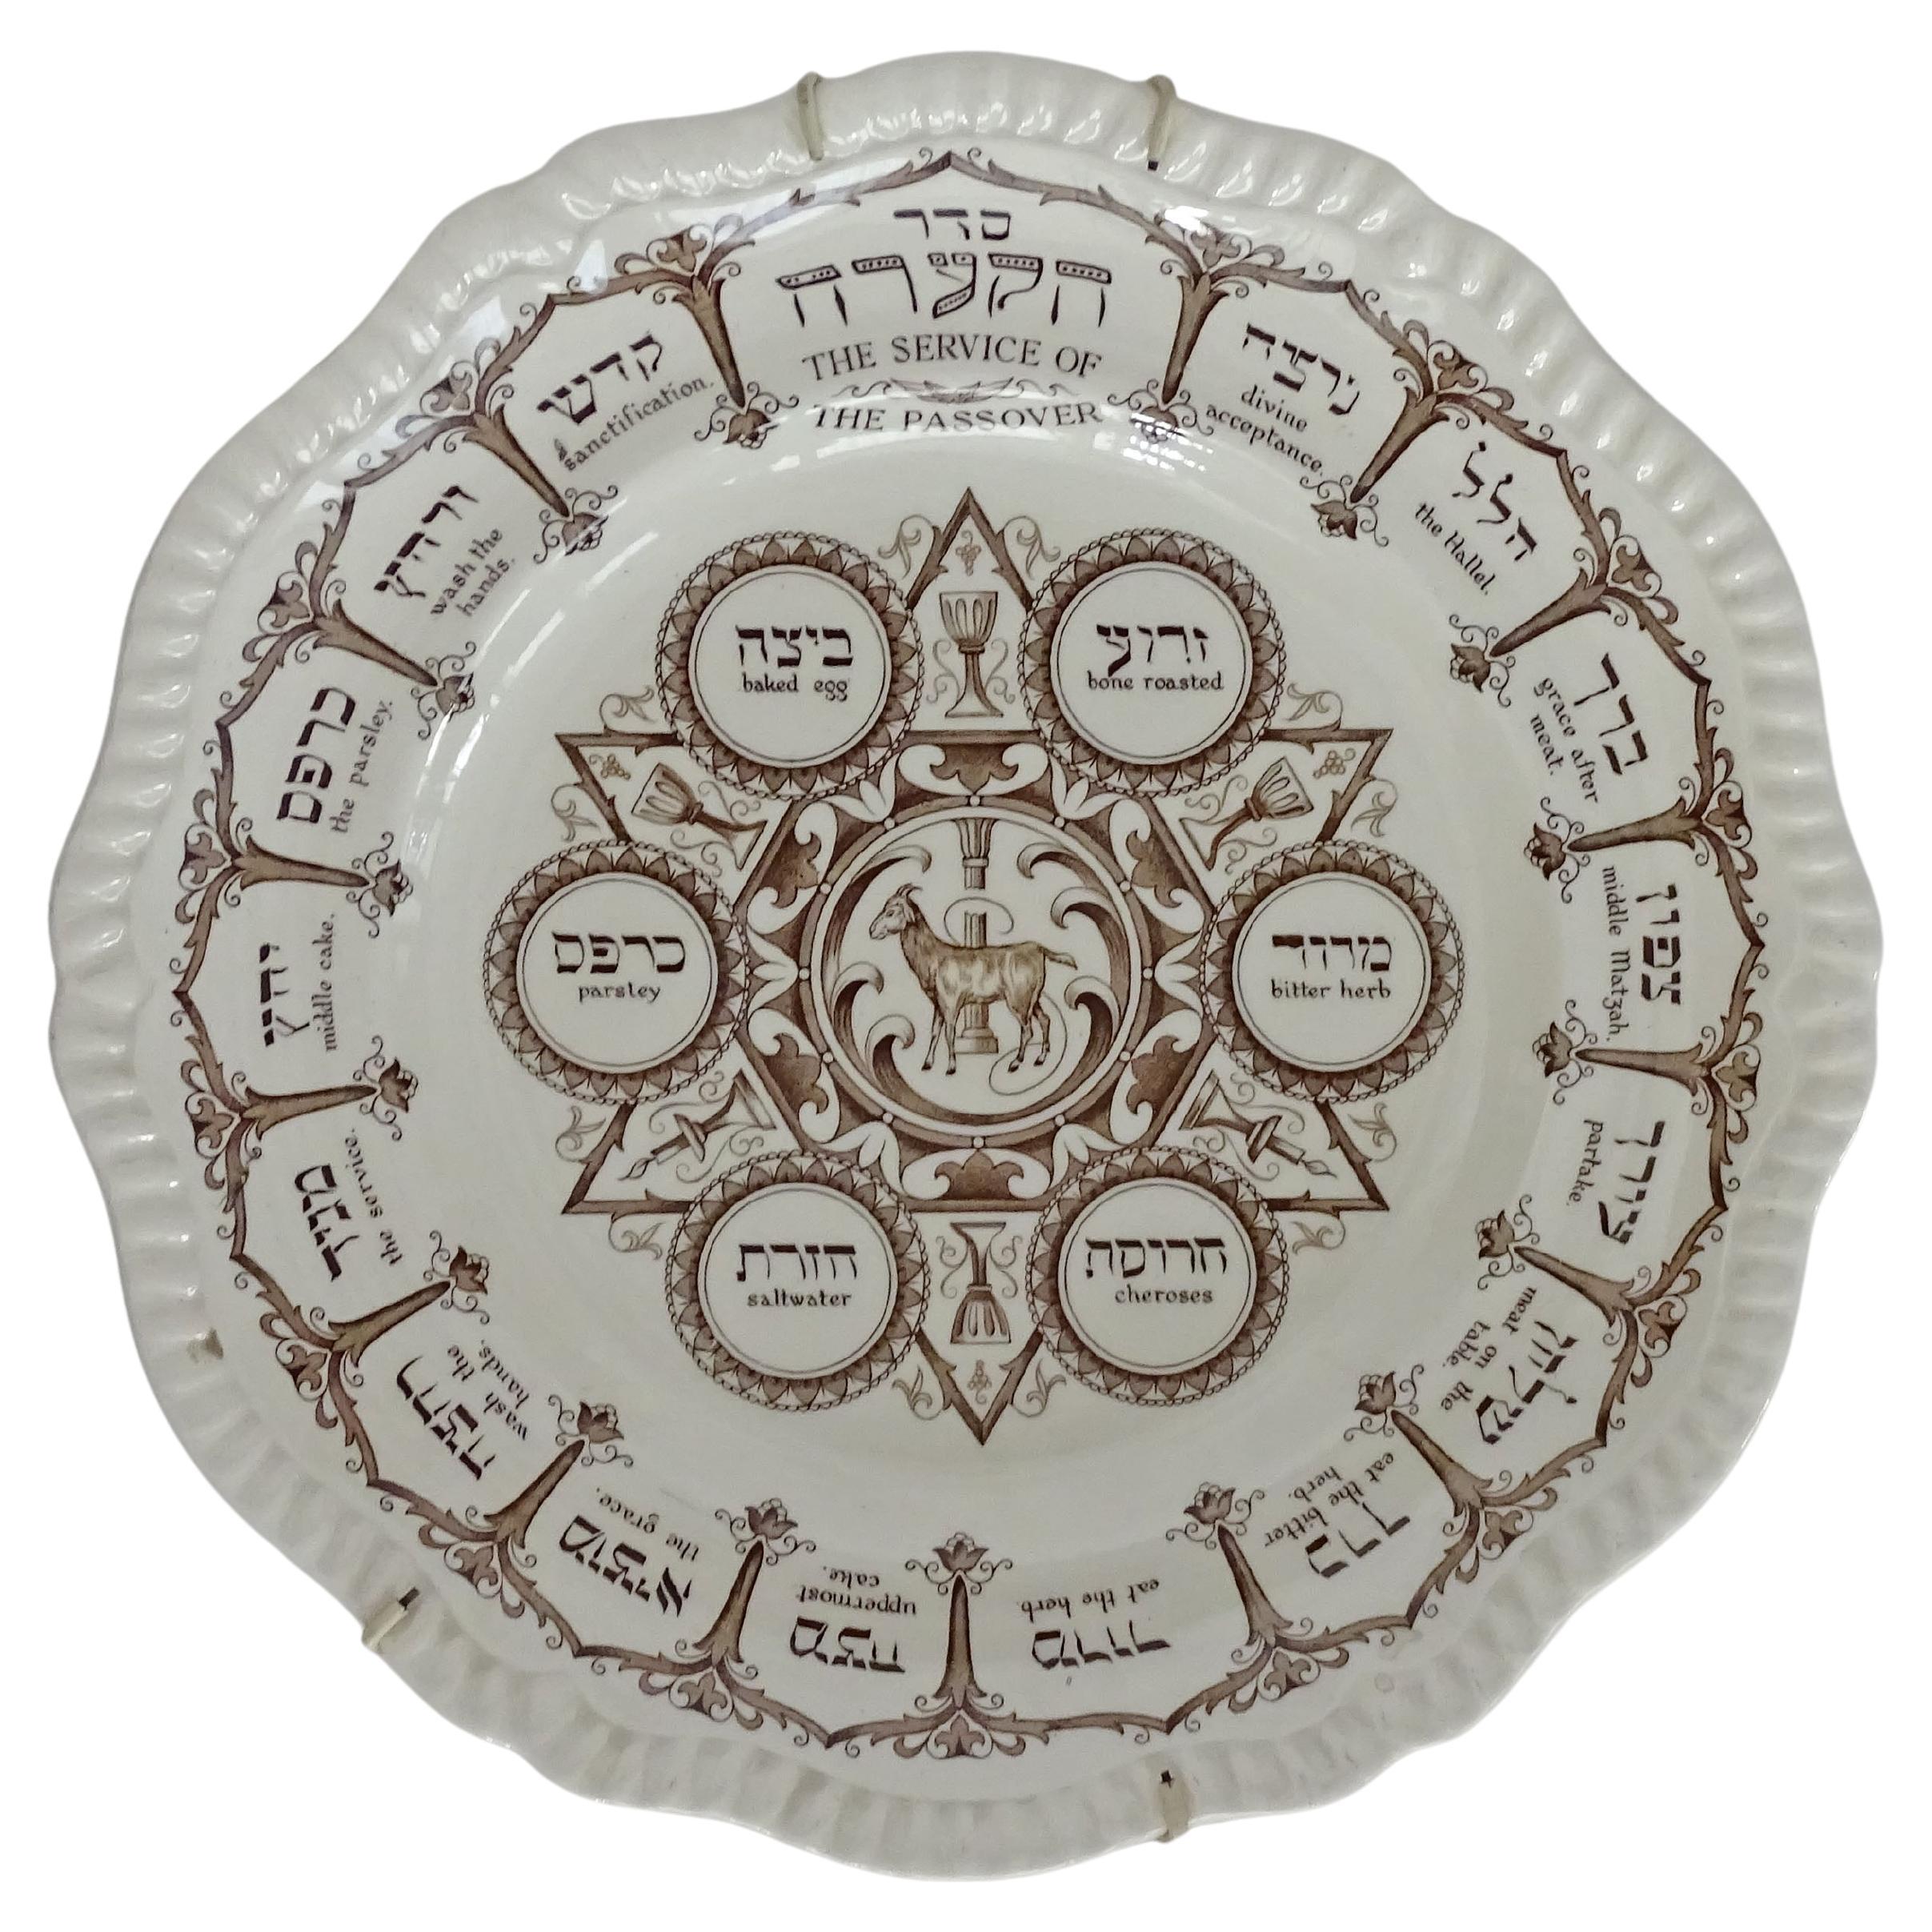 Pesach "Seder" plate by Copeland Spode, England 1950s